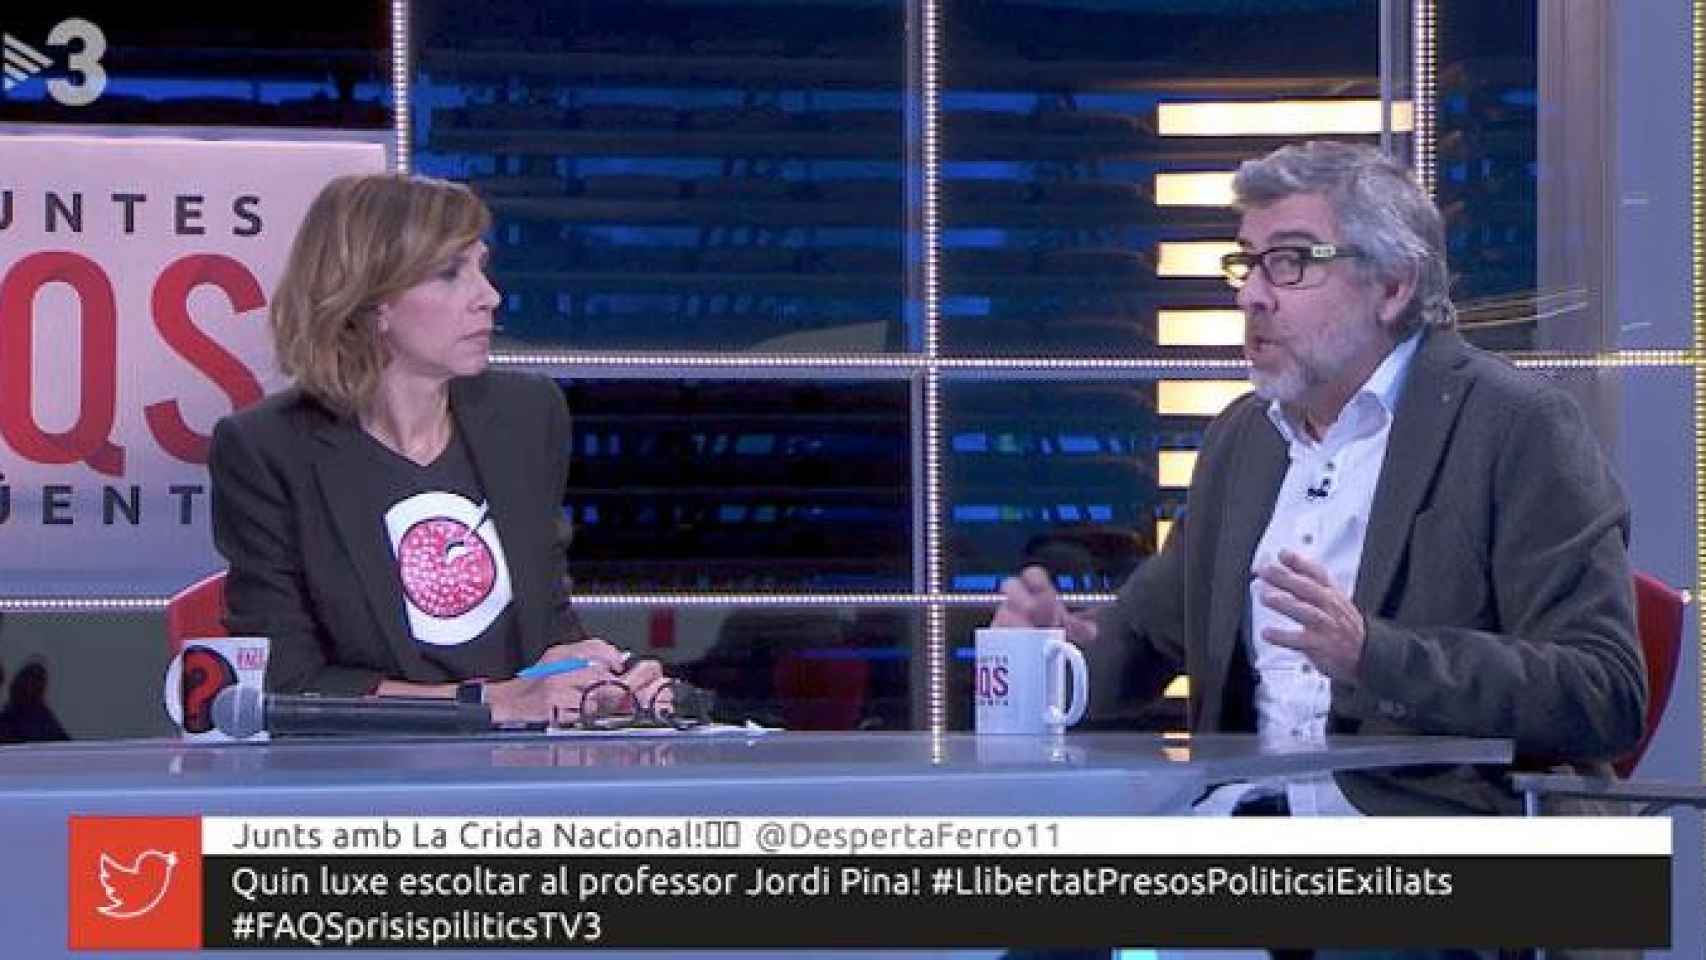 La presentadora de FAQS de TV3, Cristina Puig, entrevista al letrado Jordi Pina en el programa de TV3 que usa la expresión 'presos políticos', saltándose la interrupción de la JEC / CG